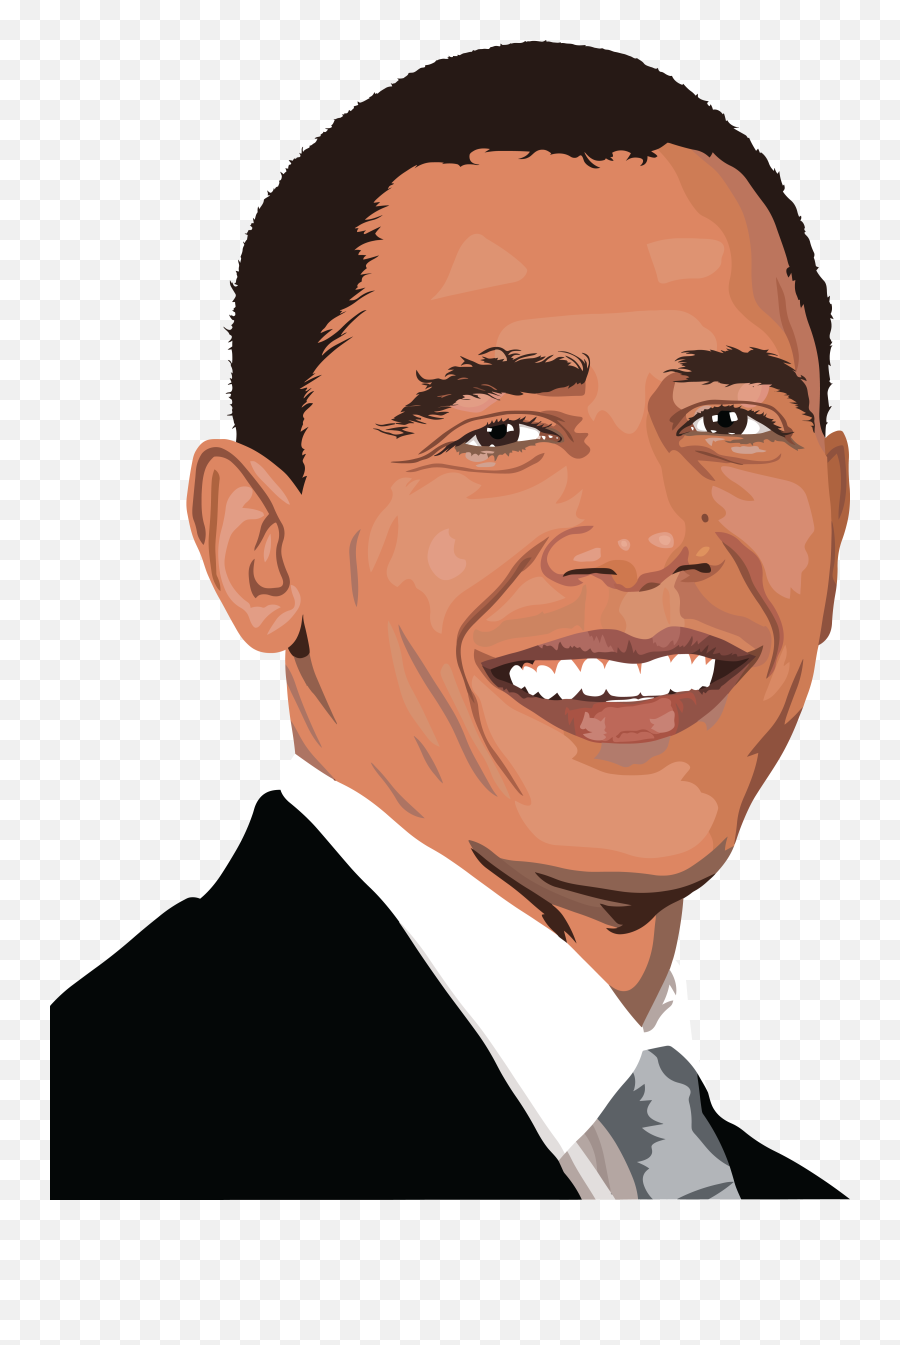 Barack Obama Transparent Image - Barack Obama Clipart Png,Obama Transparent